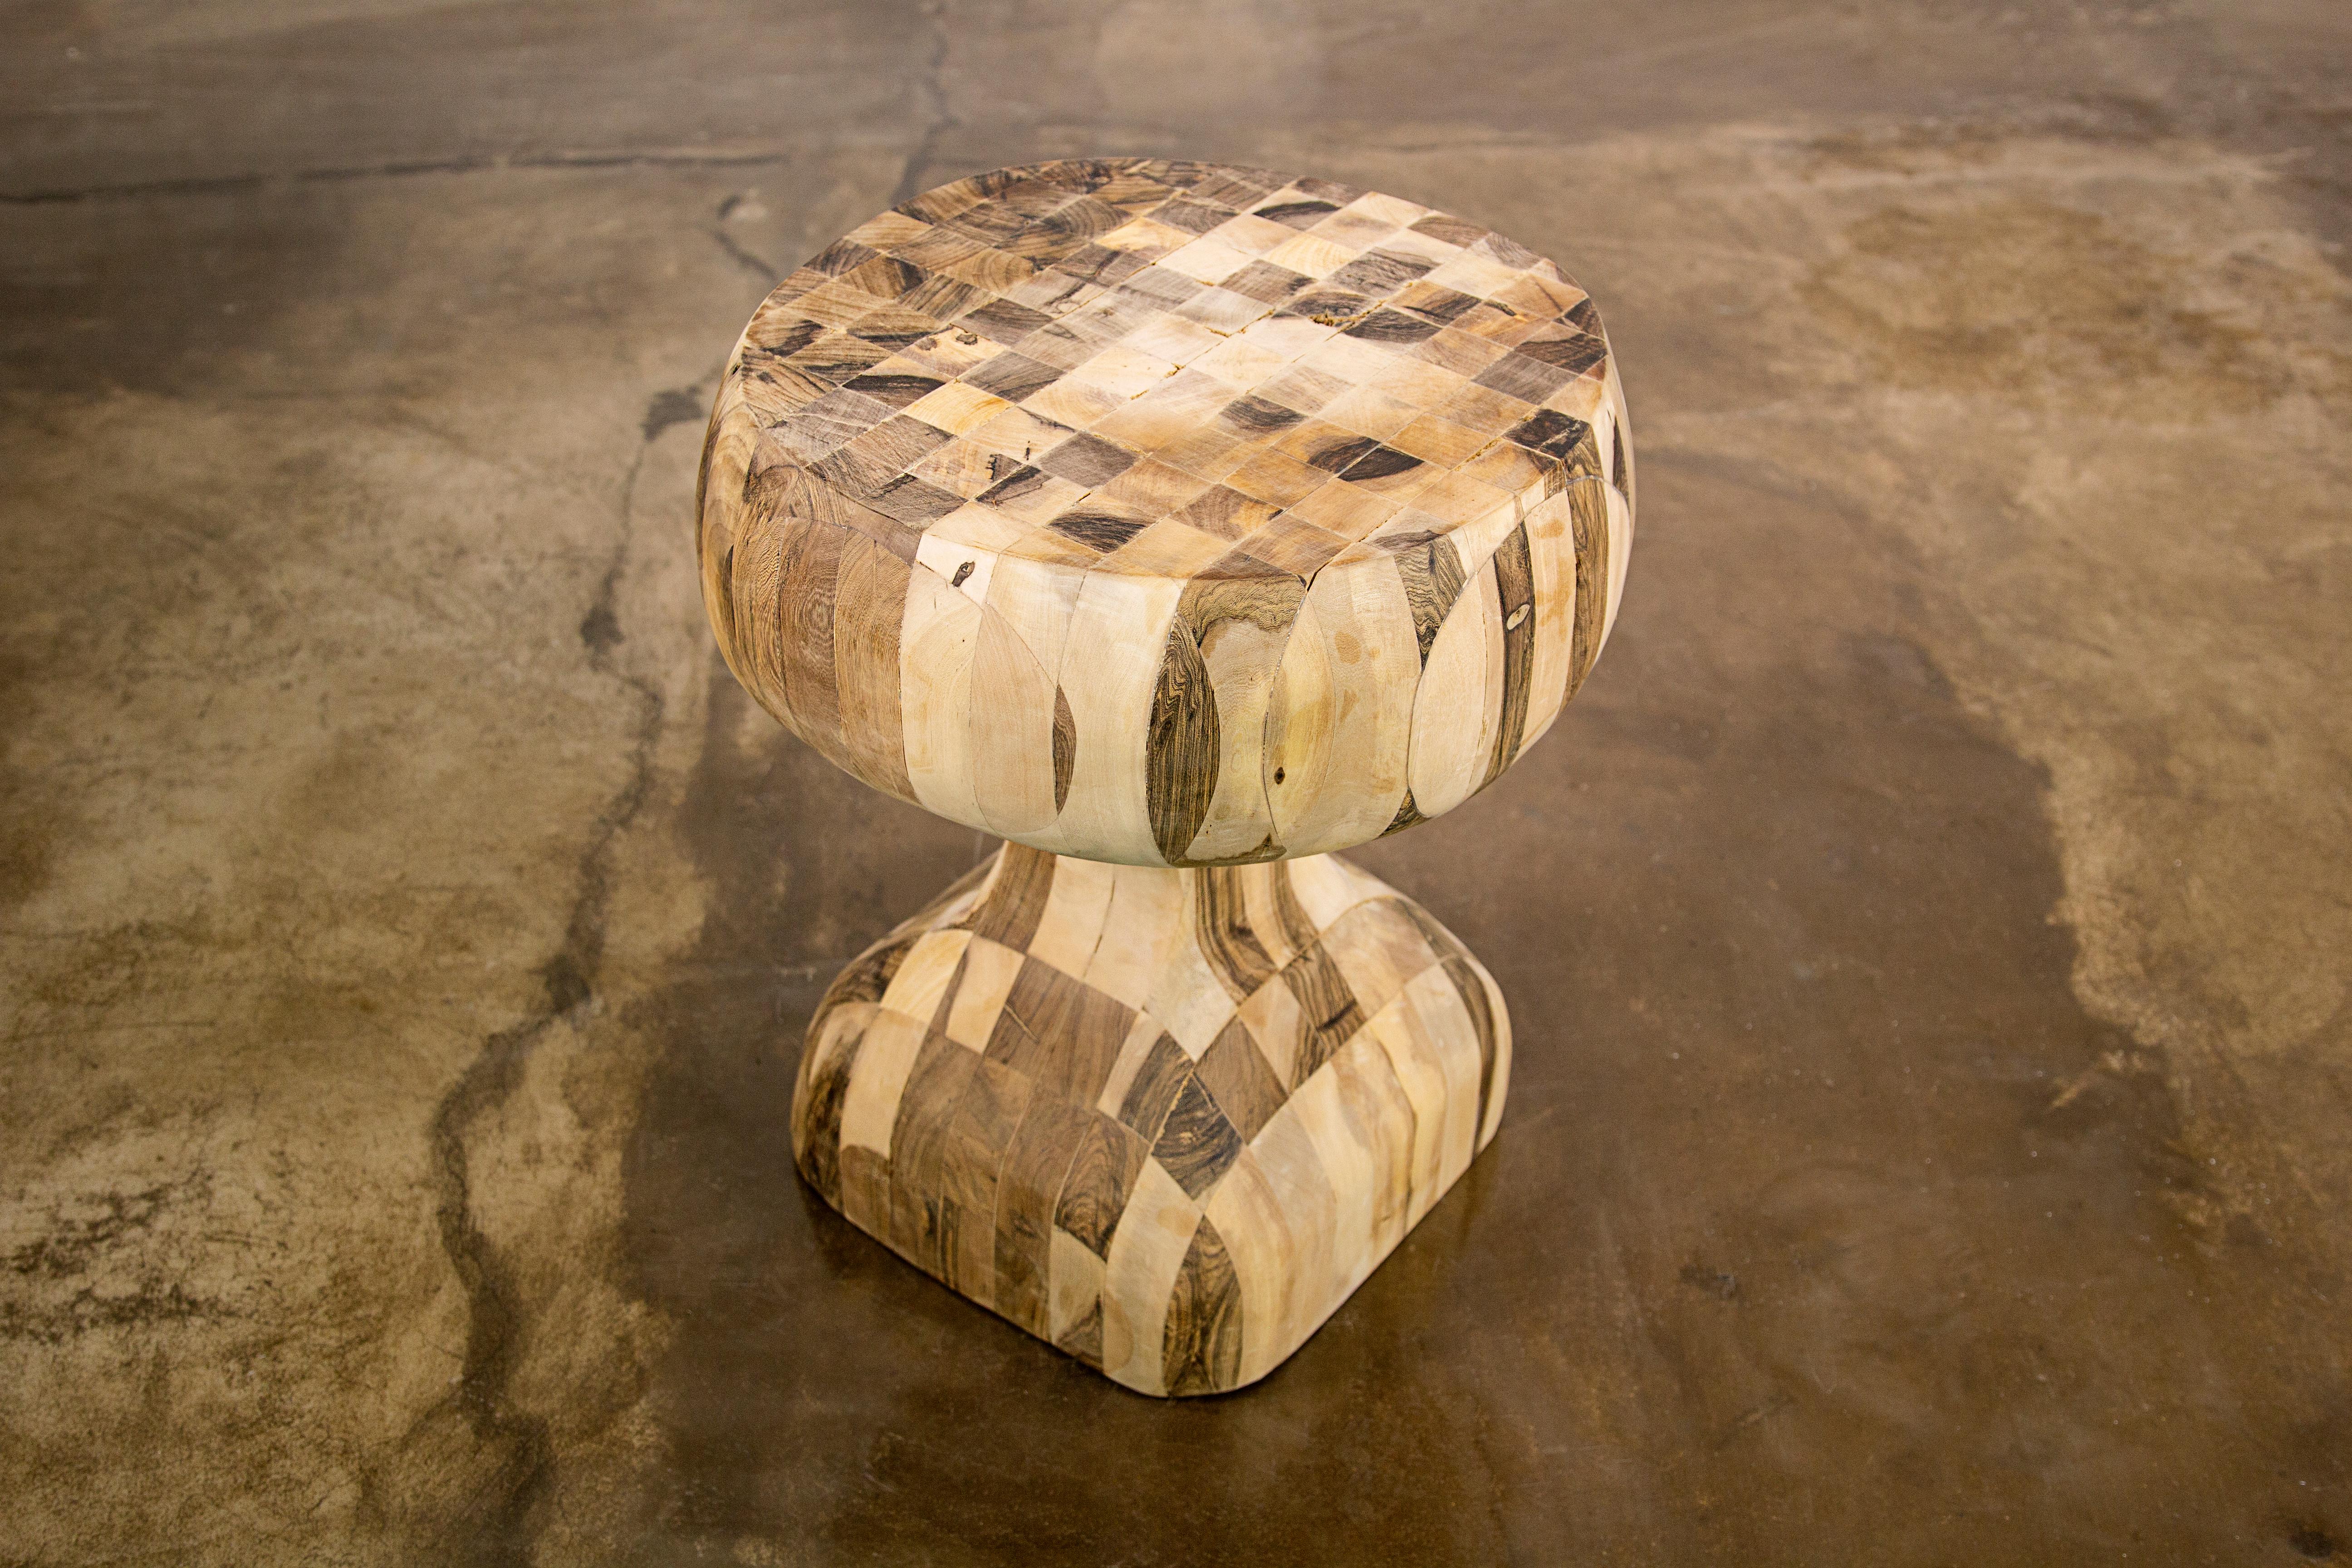 Dieser einzigartige Beistelltisch aus Massivholz ist ein Experiment von Costantini, das auf dem beliebten Beistelltisch Caliz basiert. Wir haben Dutzende von massiven Holzstücken zusammengeleimt, dann mit der Kettensäge geschnitzt, dann von Hand